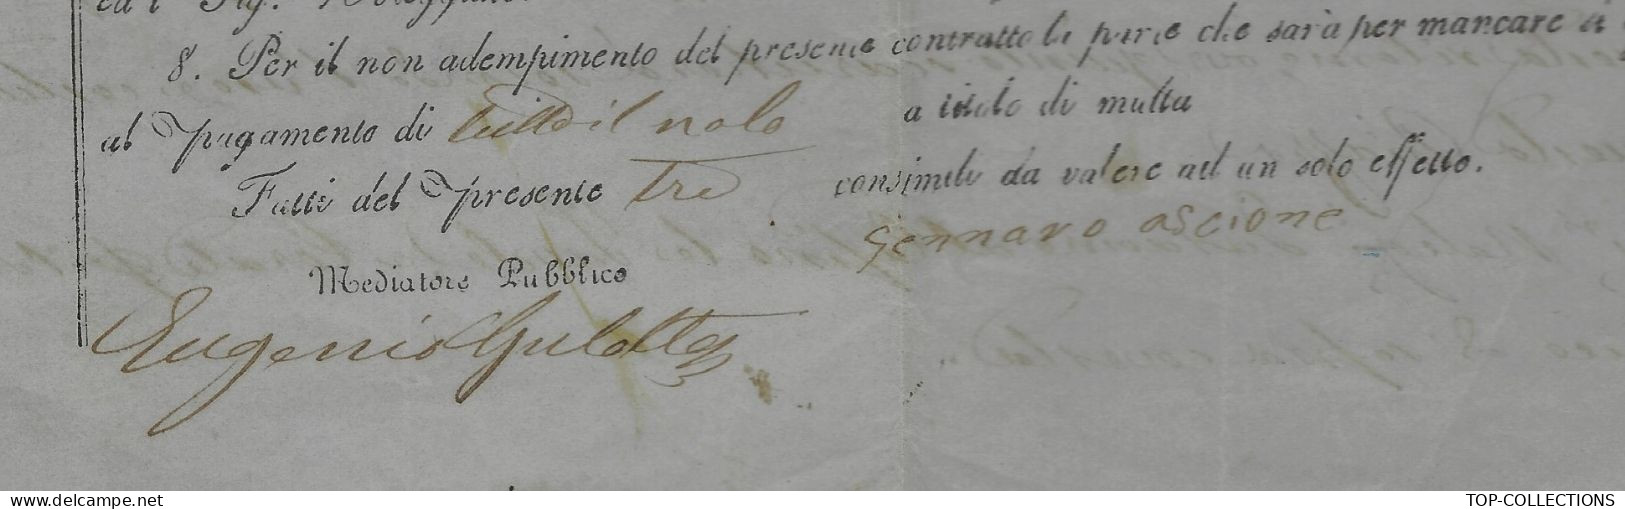 NAVIGATION ITALIE Parleme 1860  RARE CONTRAT D’ AFFRETEMENT CONTRATTO DI NOLEGGIO Pour Porto Palo Sicile - Italia